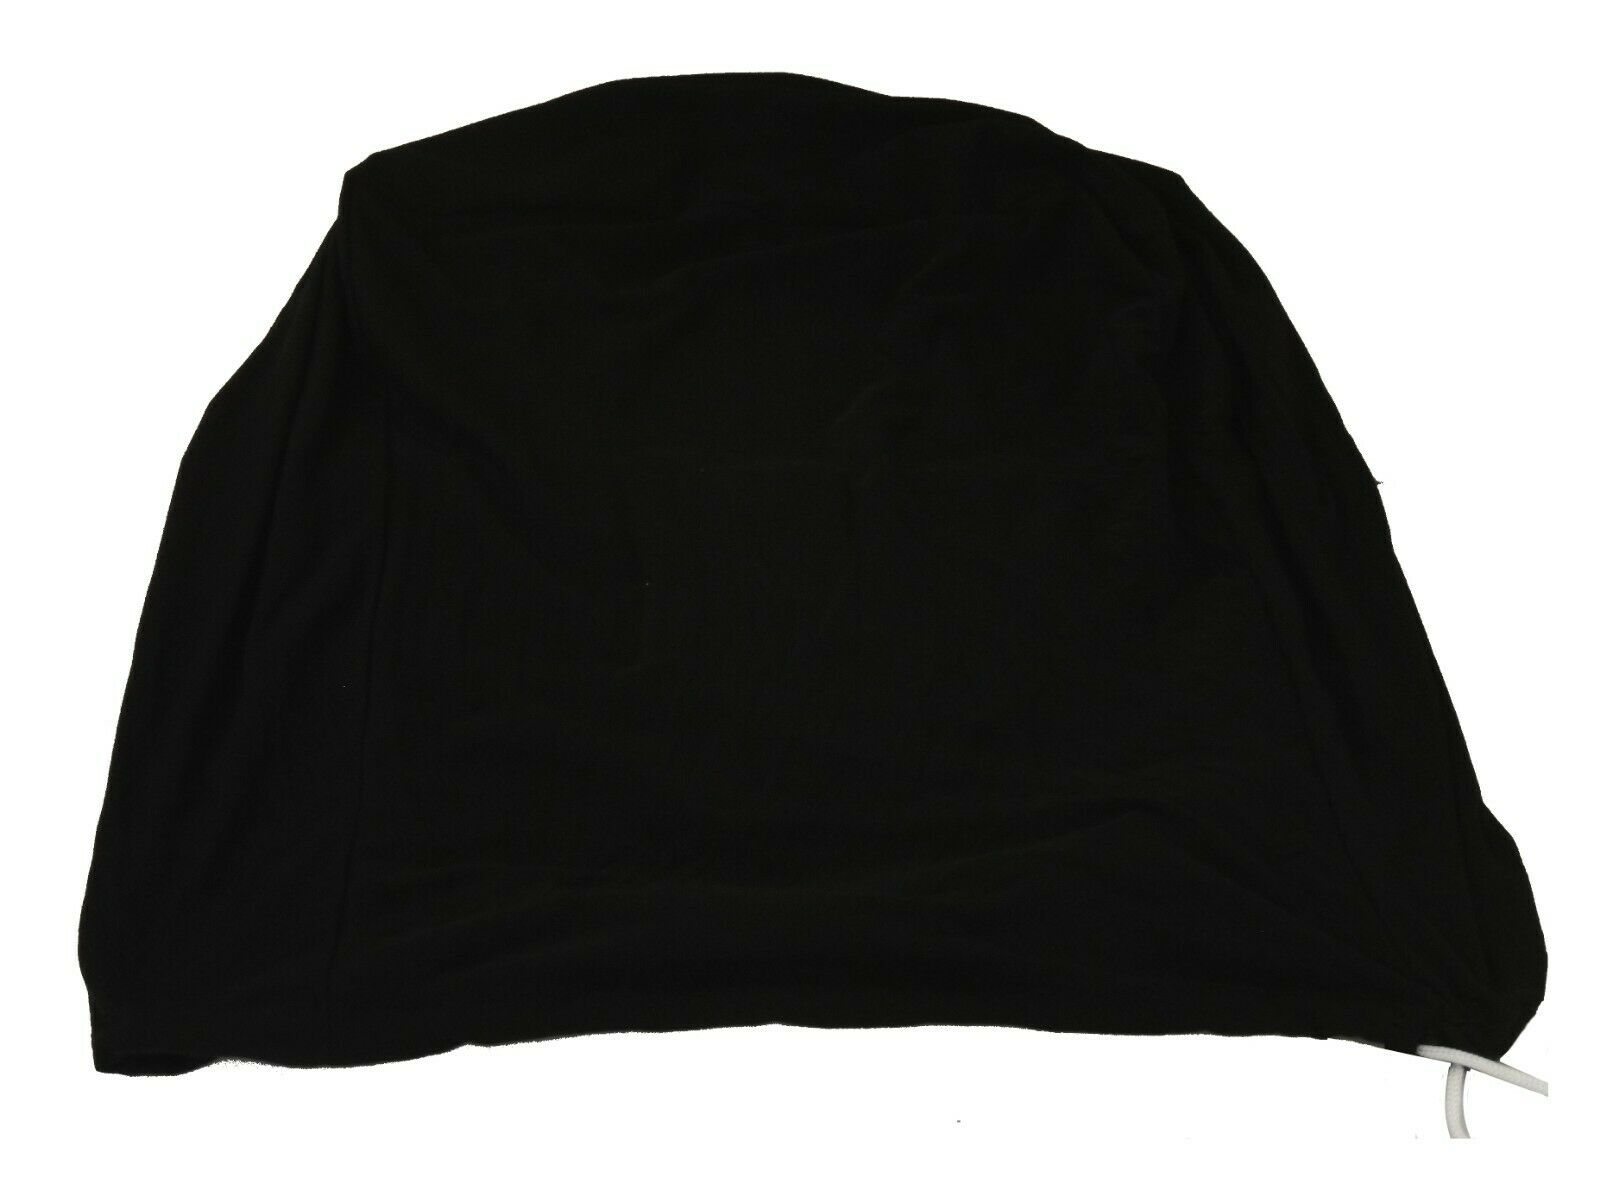 Auto Schutzhaube 5,8 m schwarz Schutzhülle Abdeckung Plane Decke Schutzdecke  elastisch Oldtimer